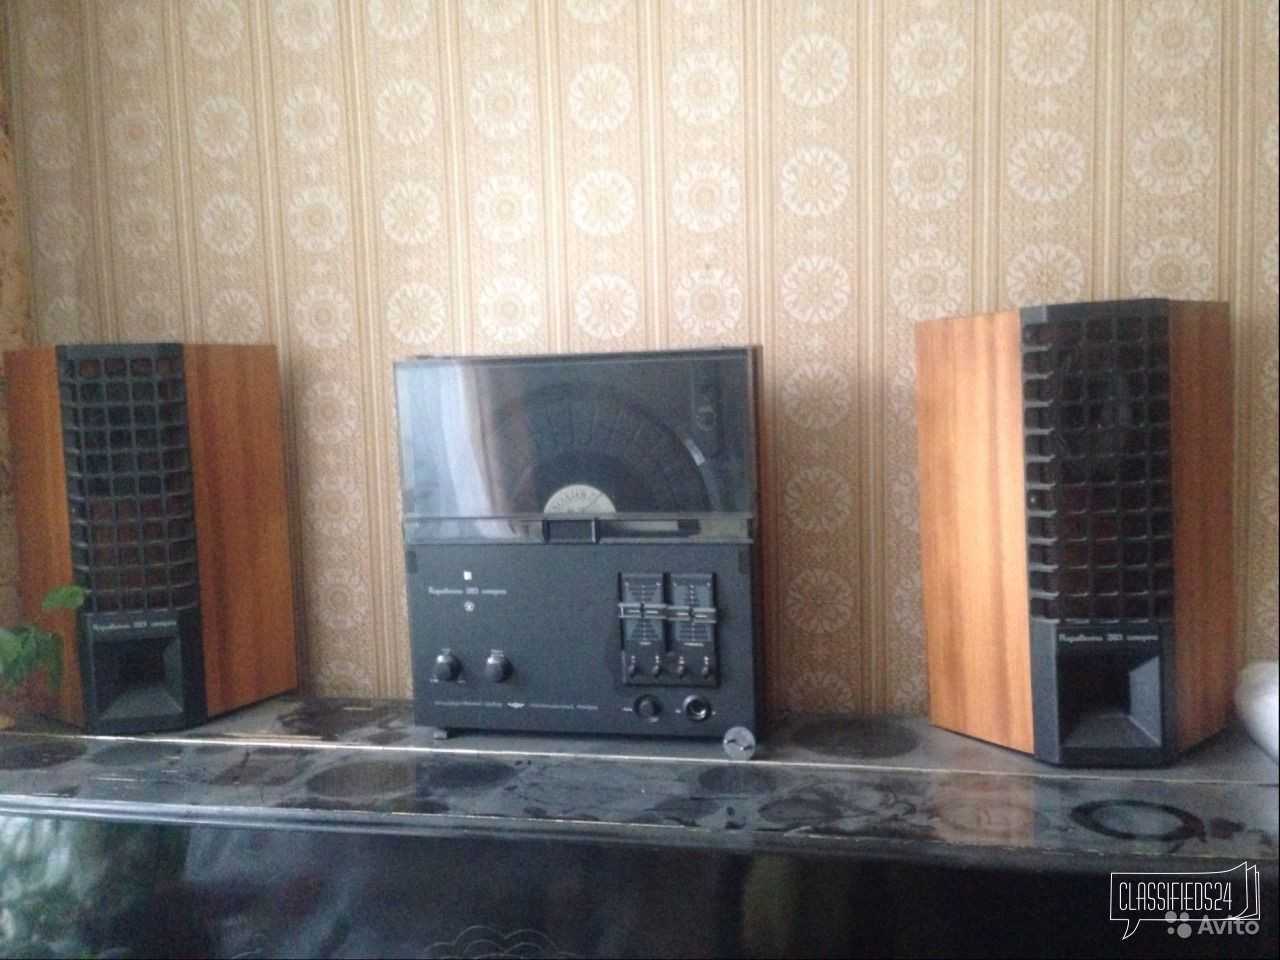 10 самых раритетных моделей советской аудиотехники | 𝚷𝚲𝐎௶𝐀𝐃𝐊𝐀 𝐌𝖀𝐗𝐀𝖀𝚲𝐀 𝐌𝐎𝐏𝐎𝟑𝐀